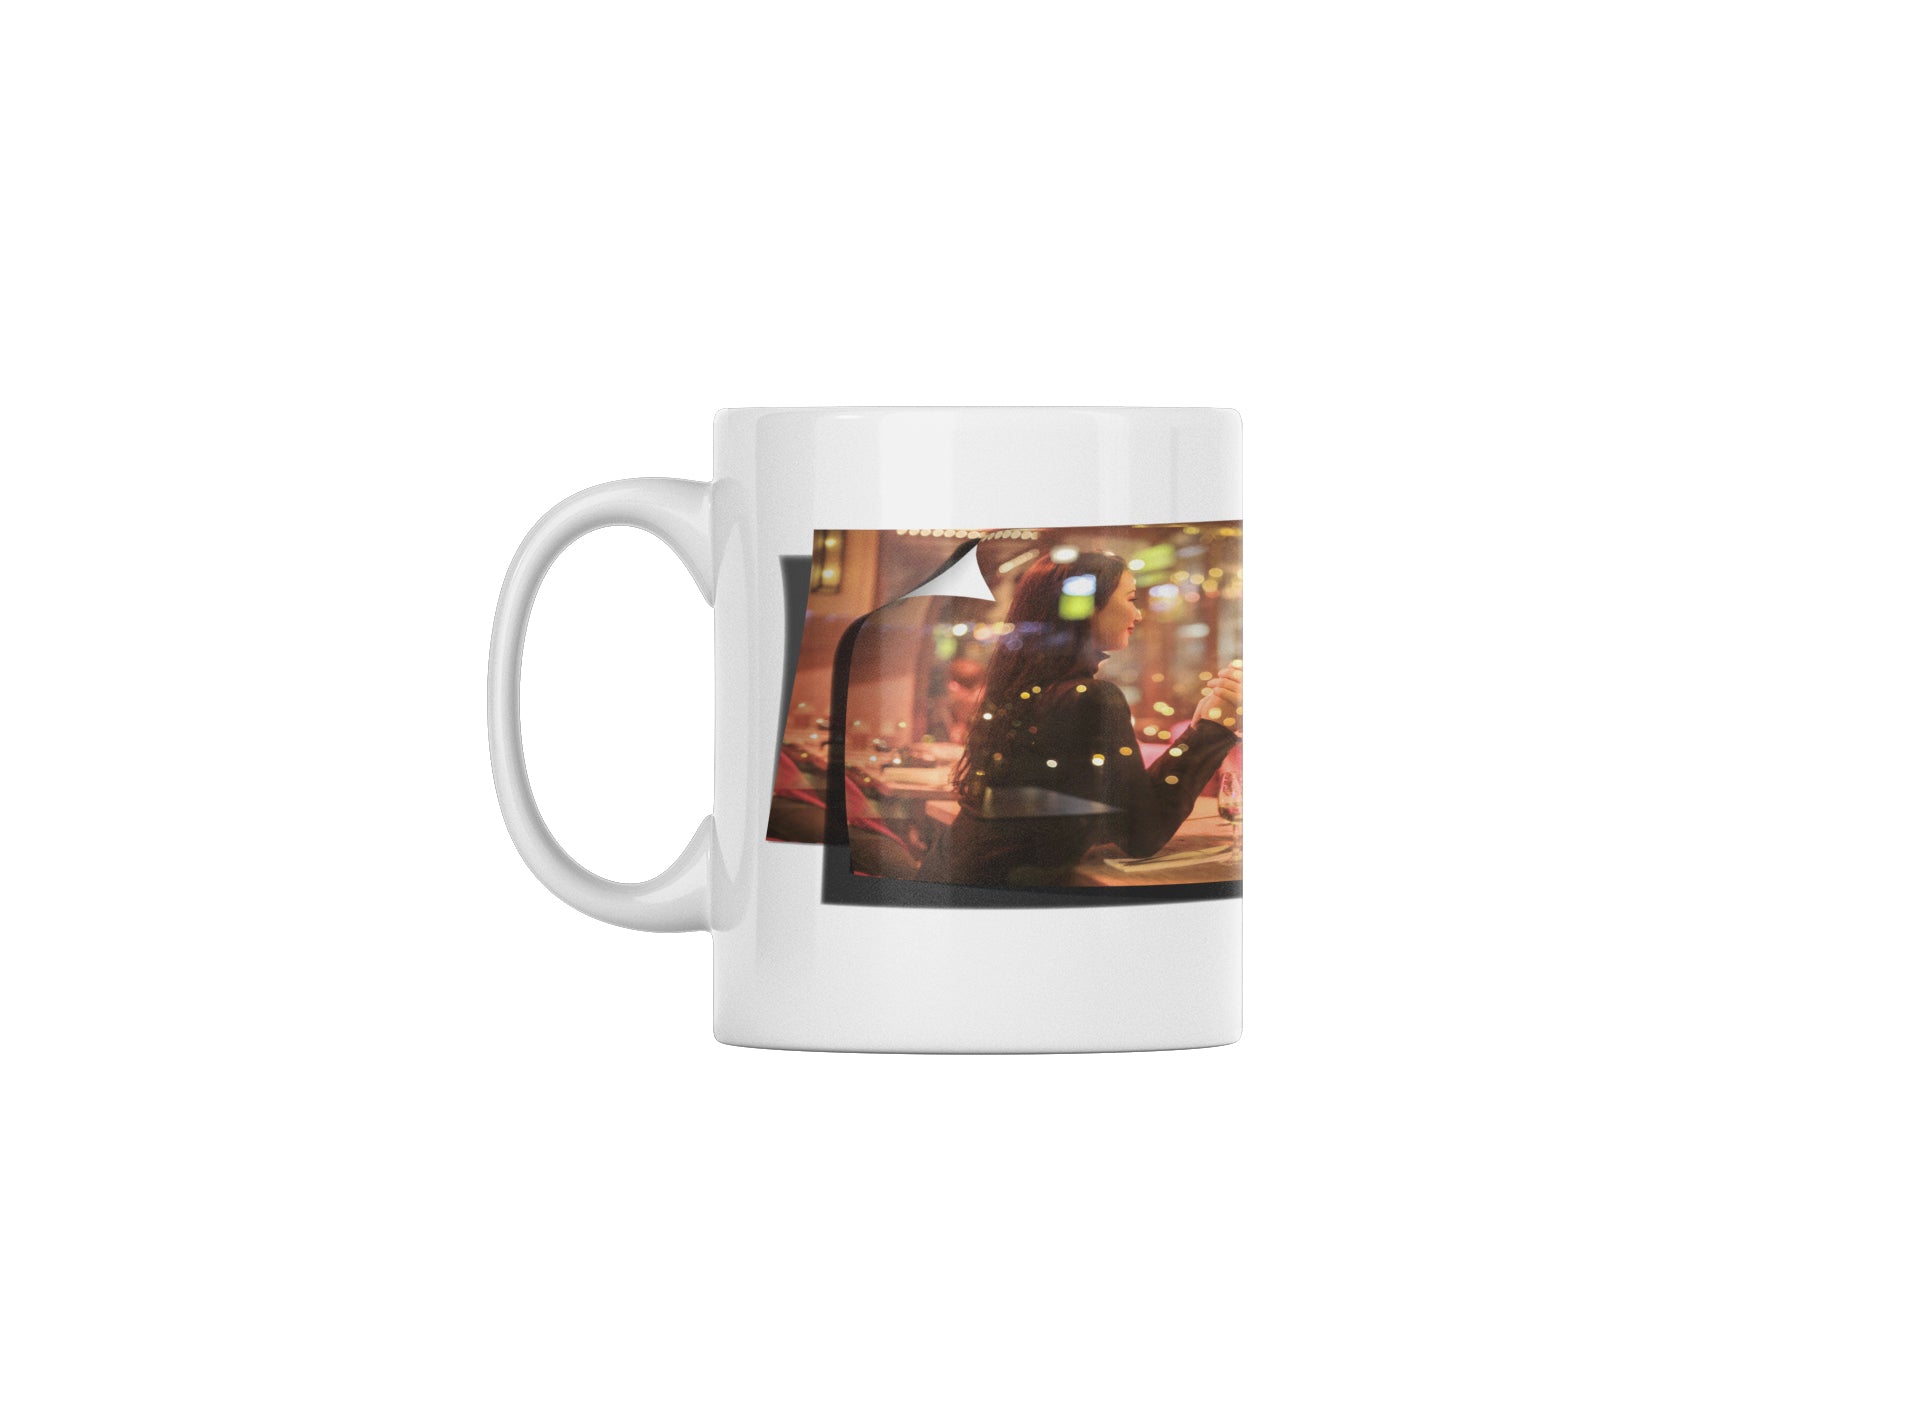 Pix Liftz - 11oz Mug #1